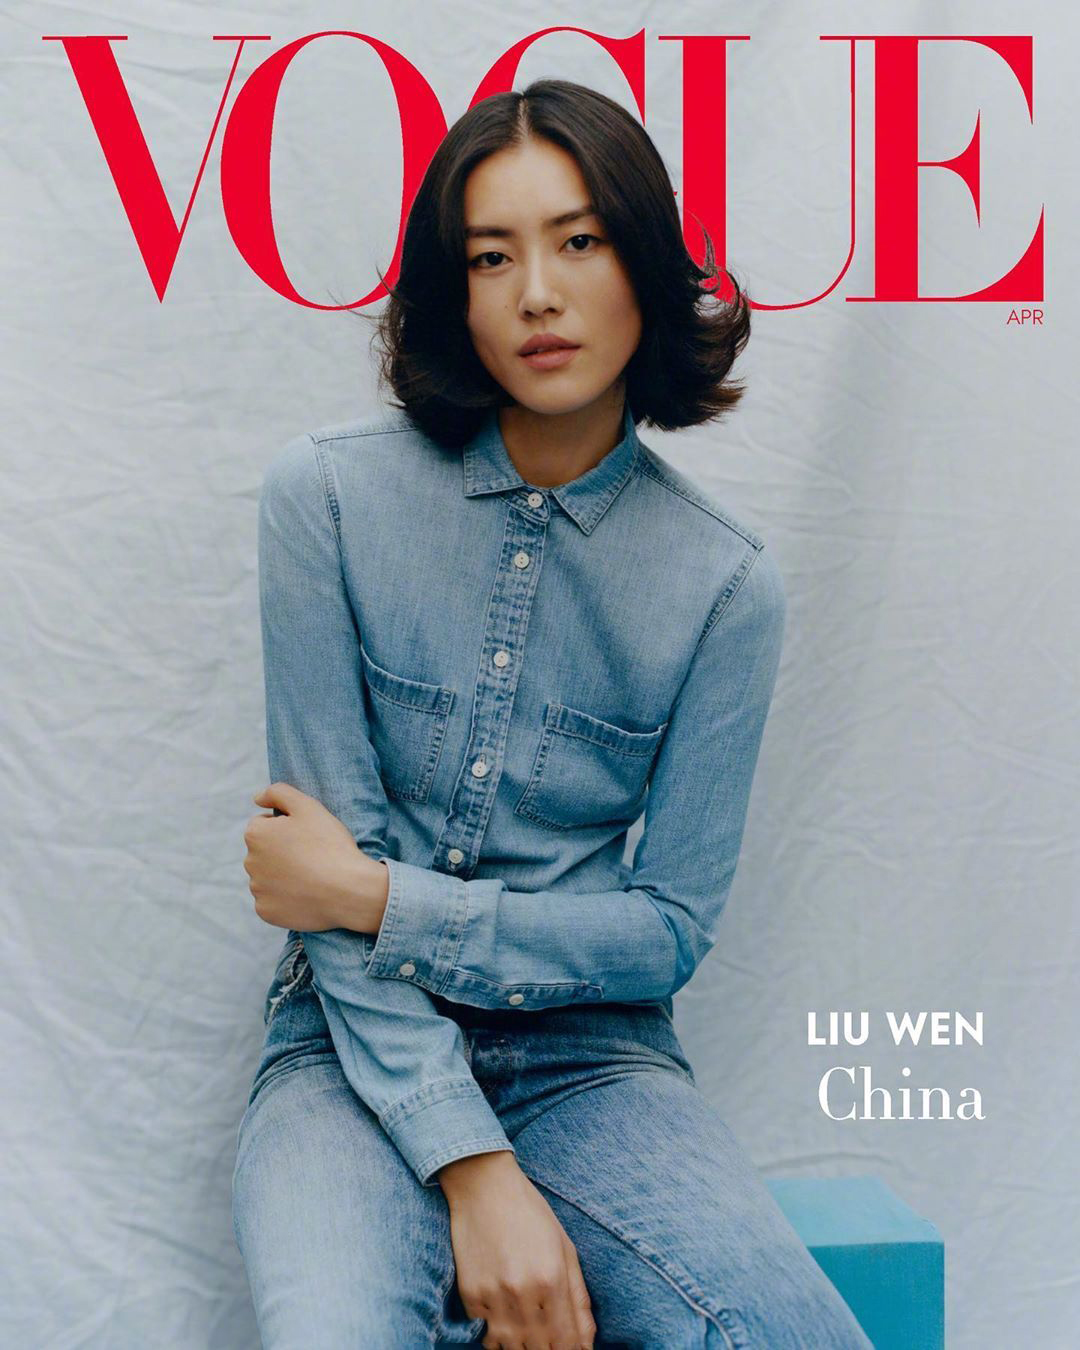 超模刘雯烟熏妆登泰国版《Vogue》封面 网友评论恐高的人受不了_大赛